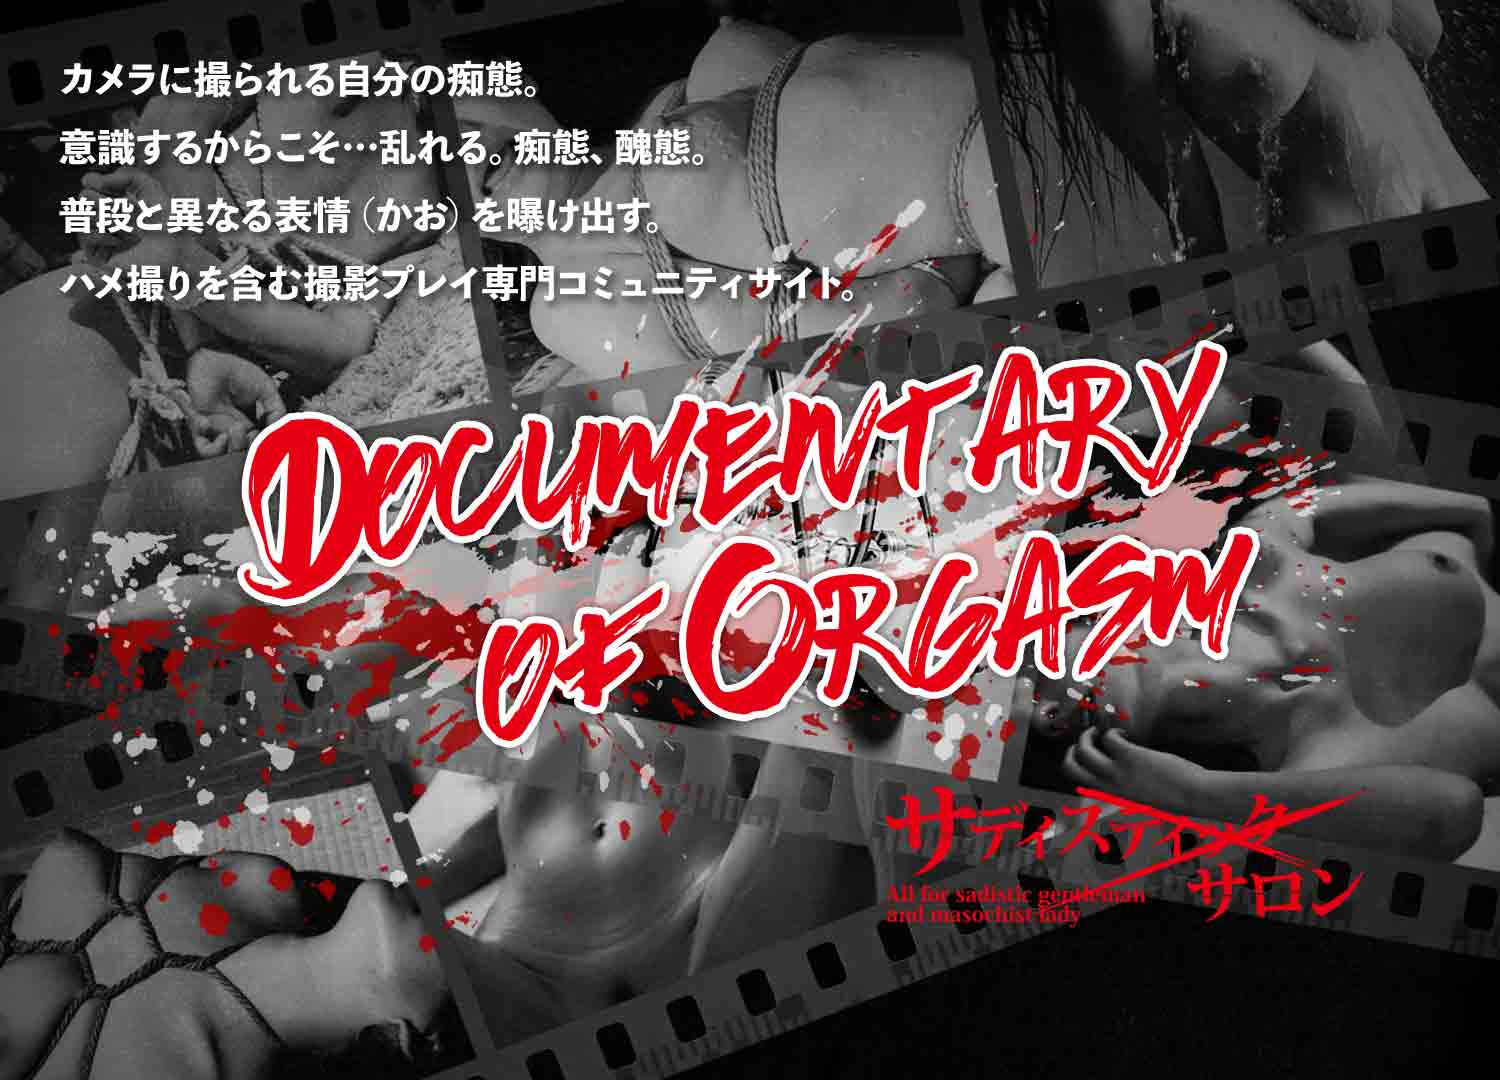 サディスティック・サロン - Documentary of Orgasm